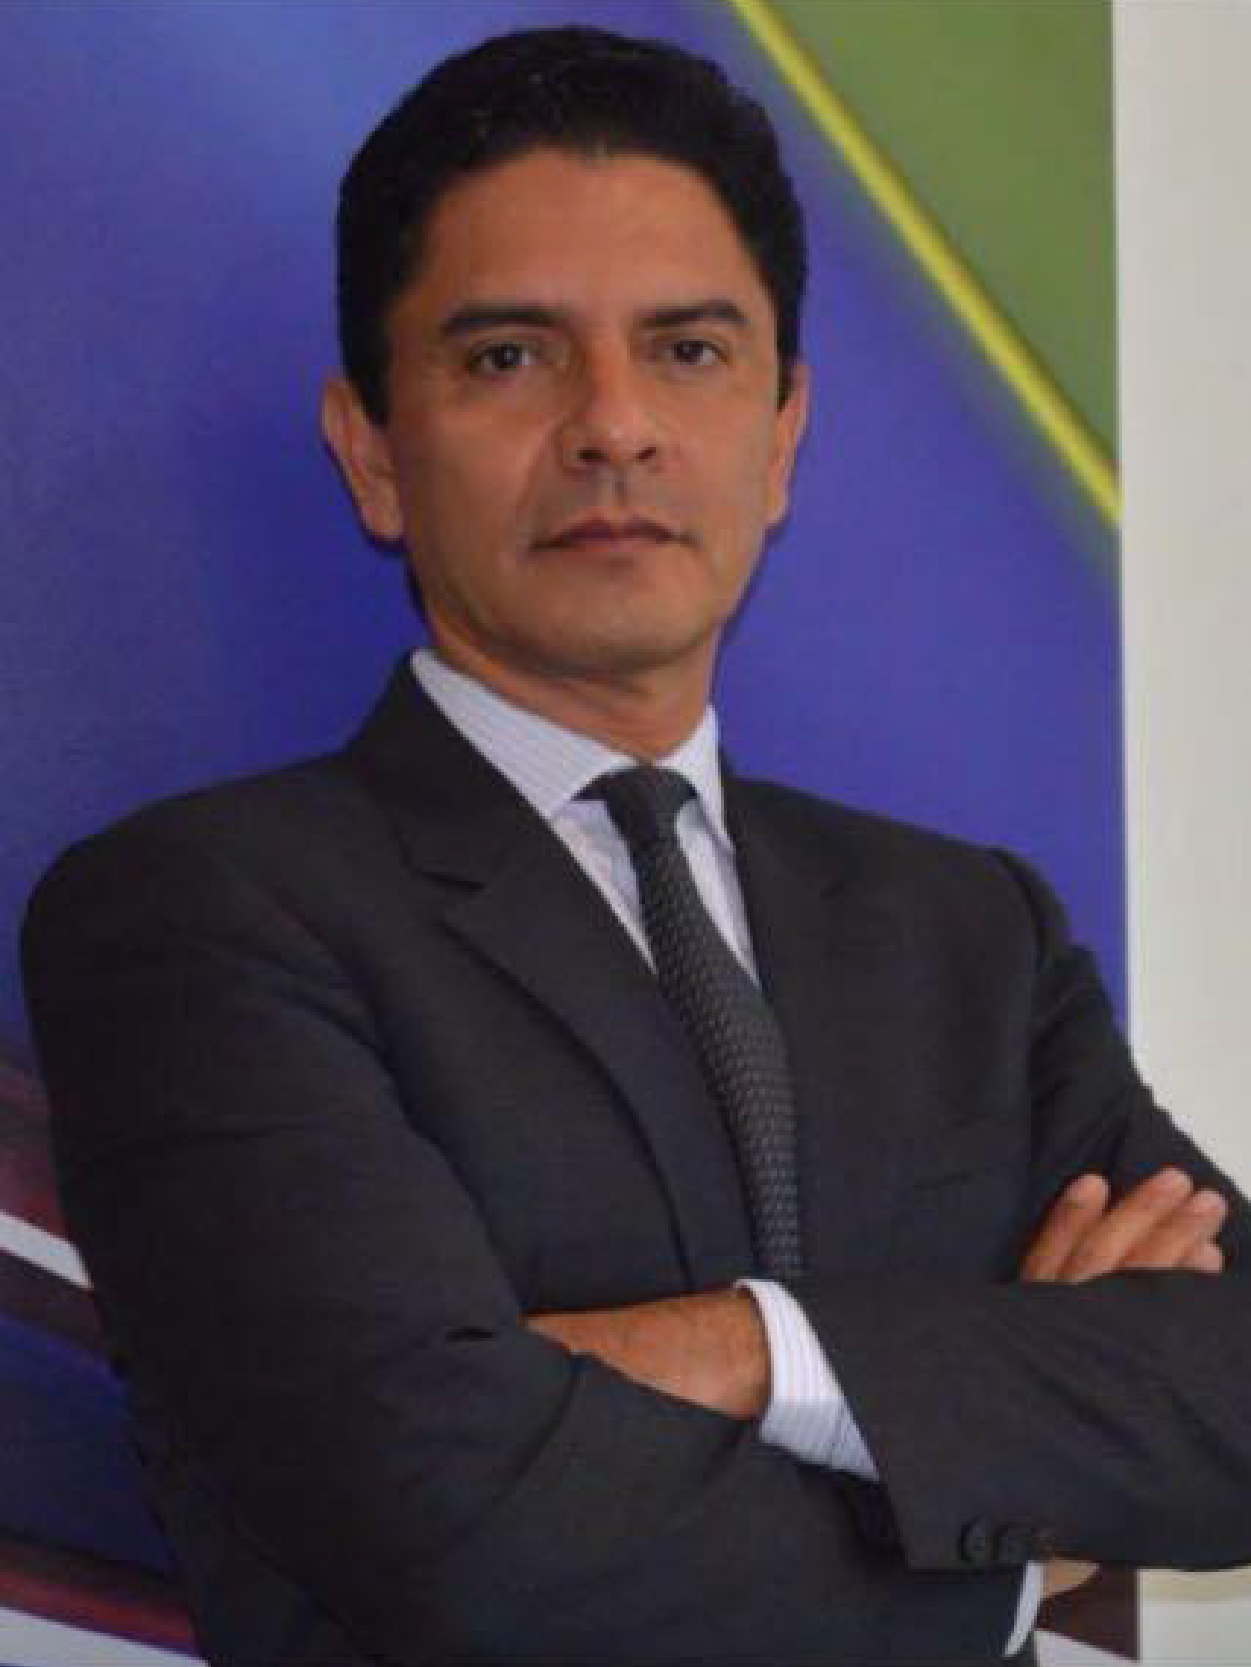 Dr. Luis Suarez